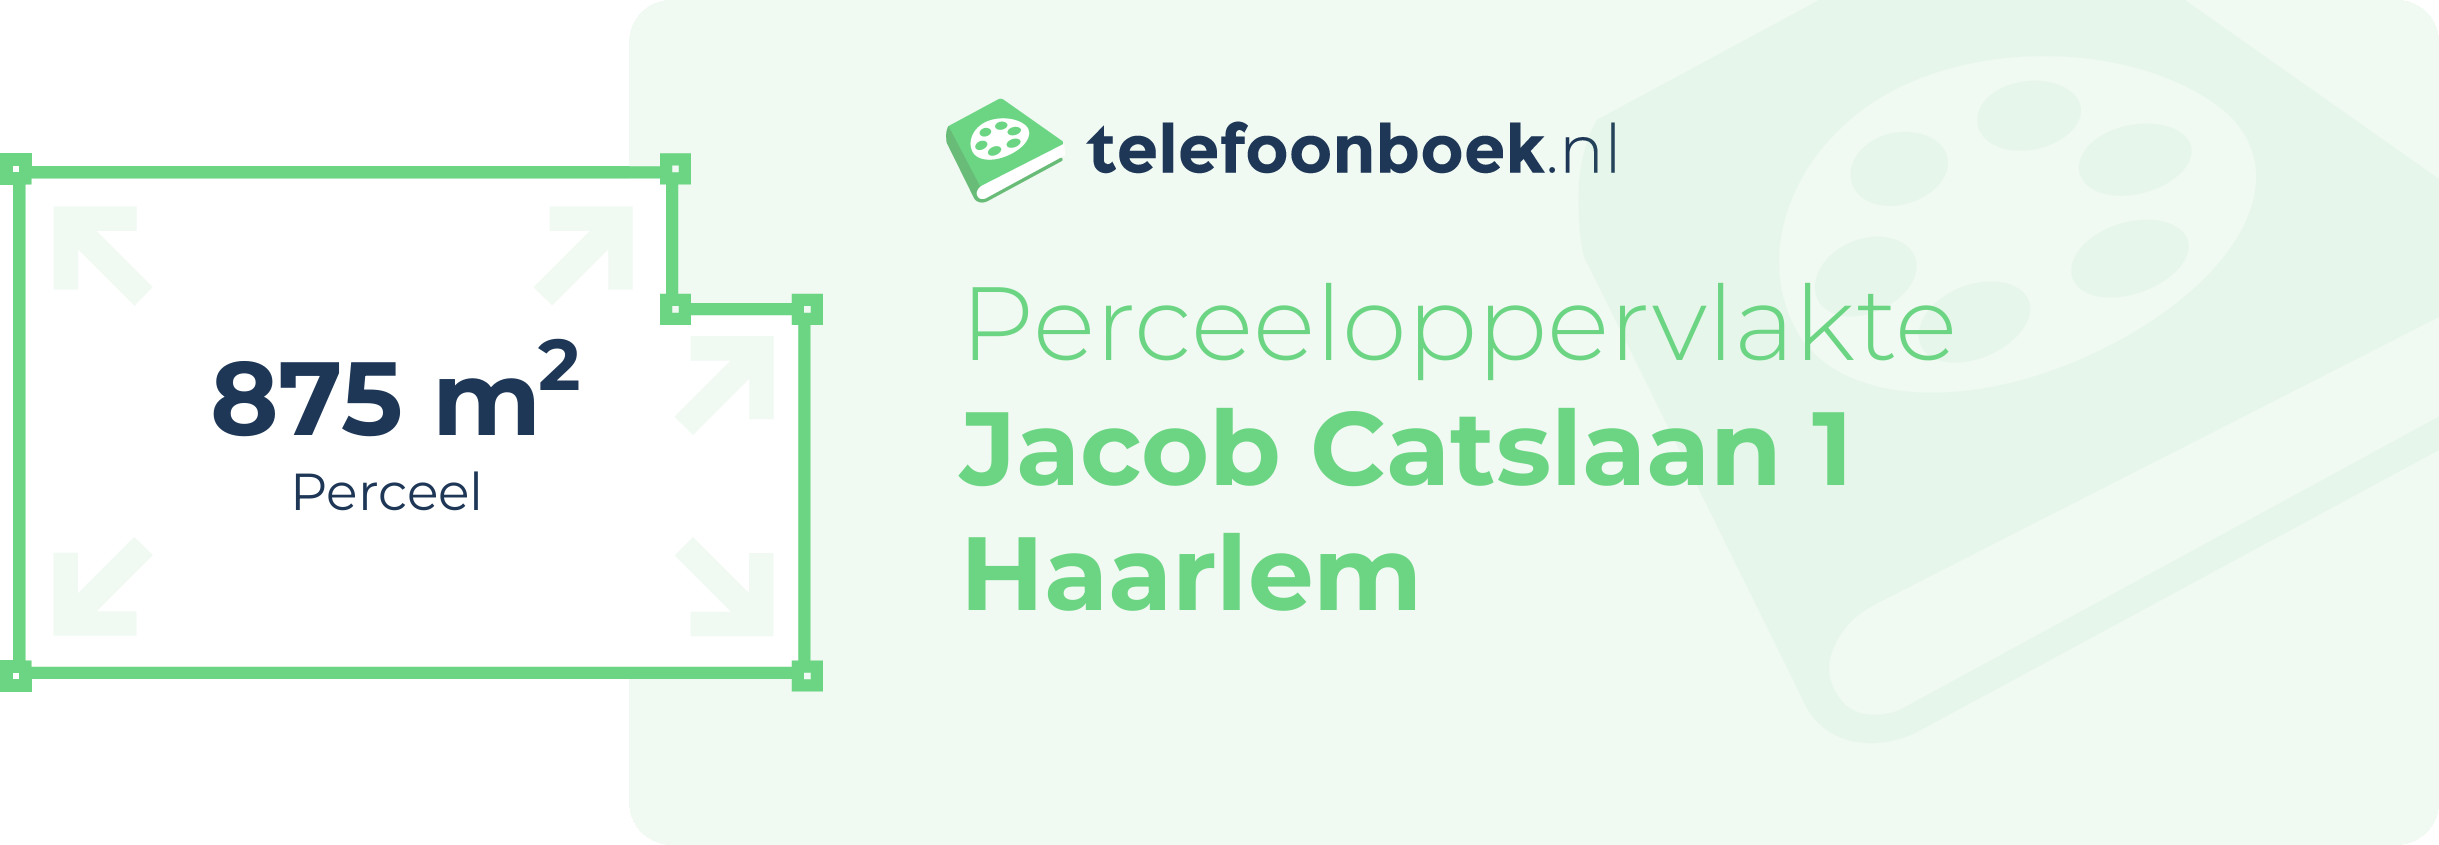 Perceeloppervlakte Jacob Catslaan 1 Haarlem